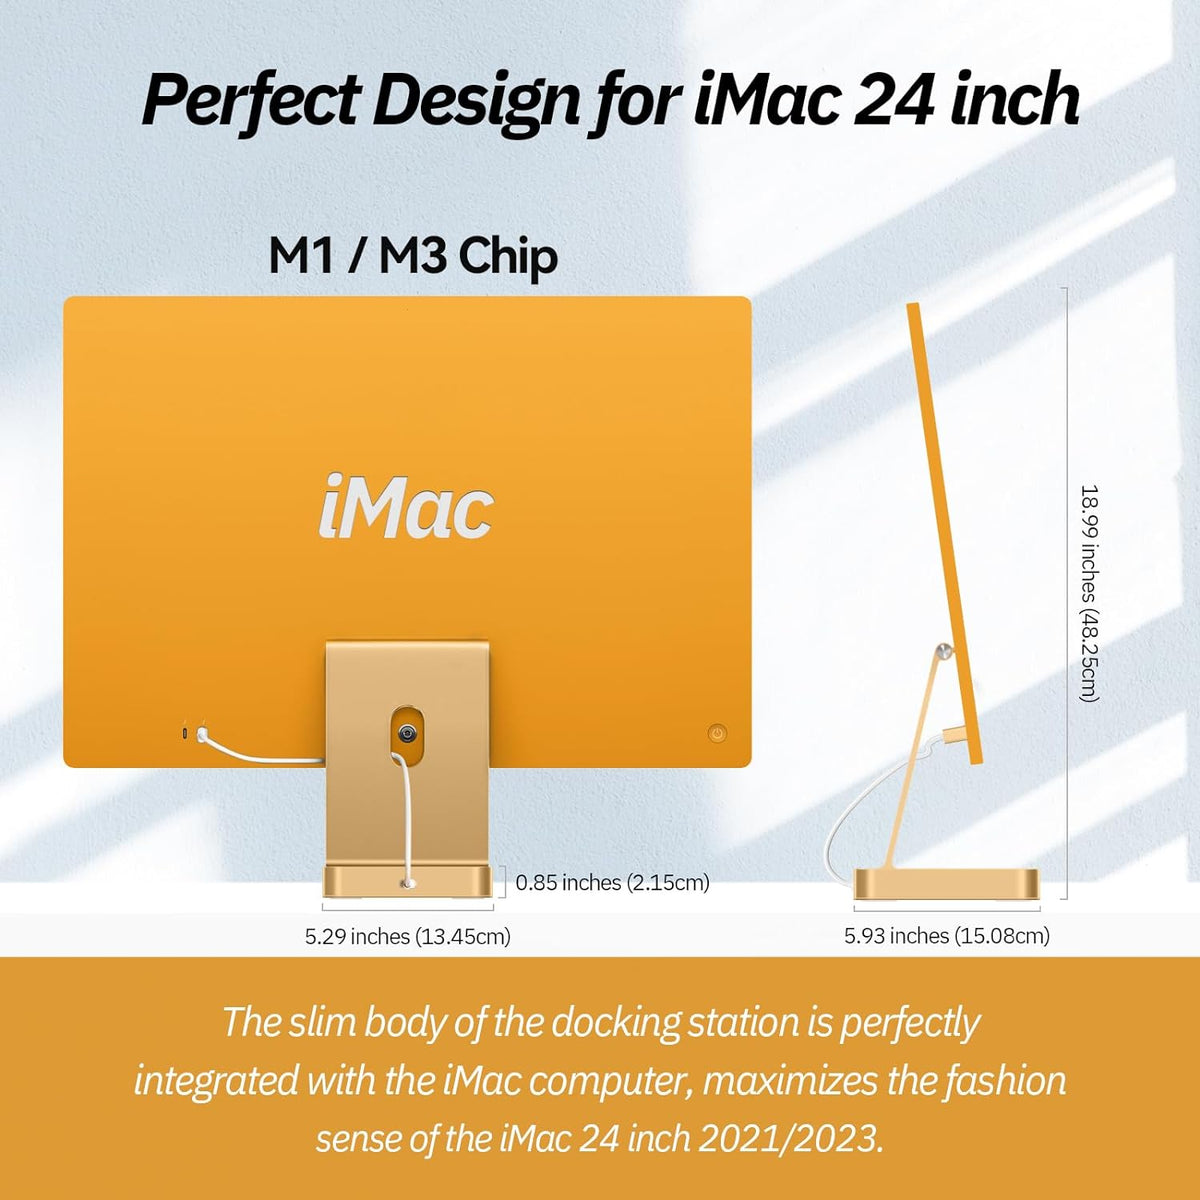 USB C Hub für iMac 24 Zoll 2021, Minisopuru USB Hub Adapter unterstützt M.2 NVMe SSD 7 in 1 Dockingstation iMac Zubehör mit USB C 10 Gbit/s, USB A 3.2, SD/TF Kartenleser, M.2 SSD (nicht enthalten), Blau.